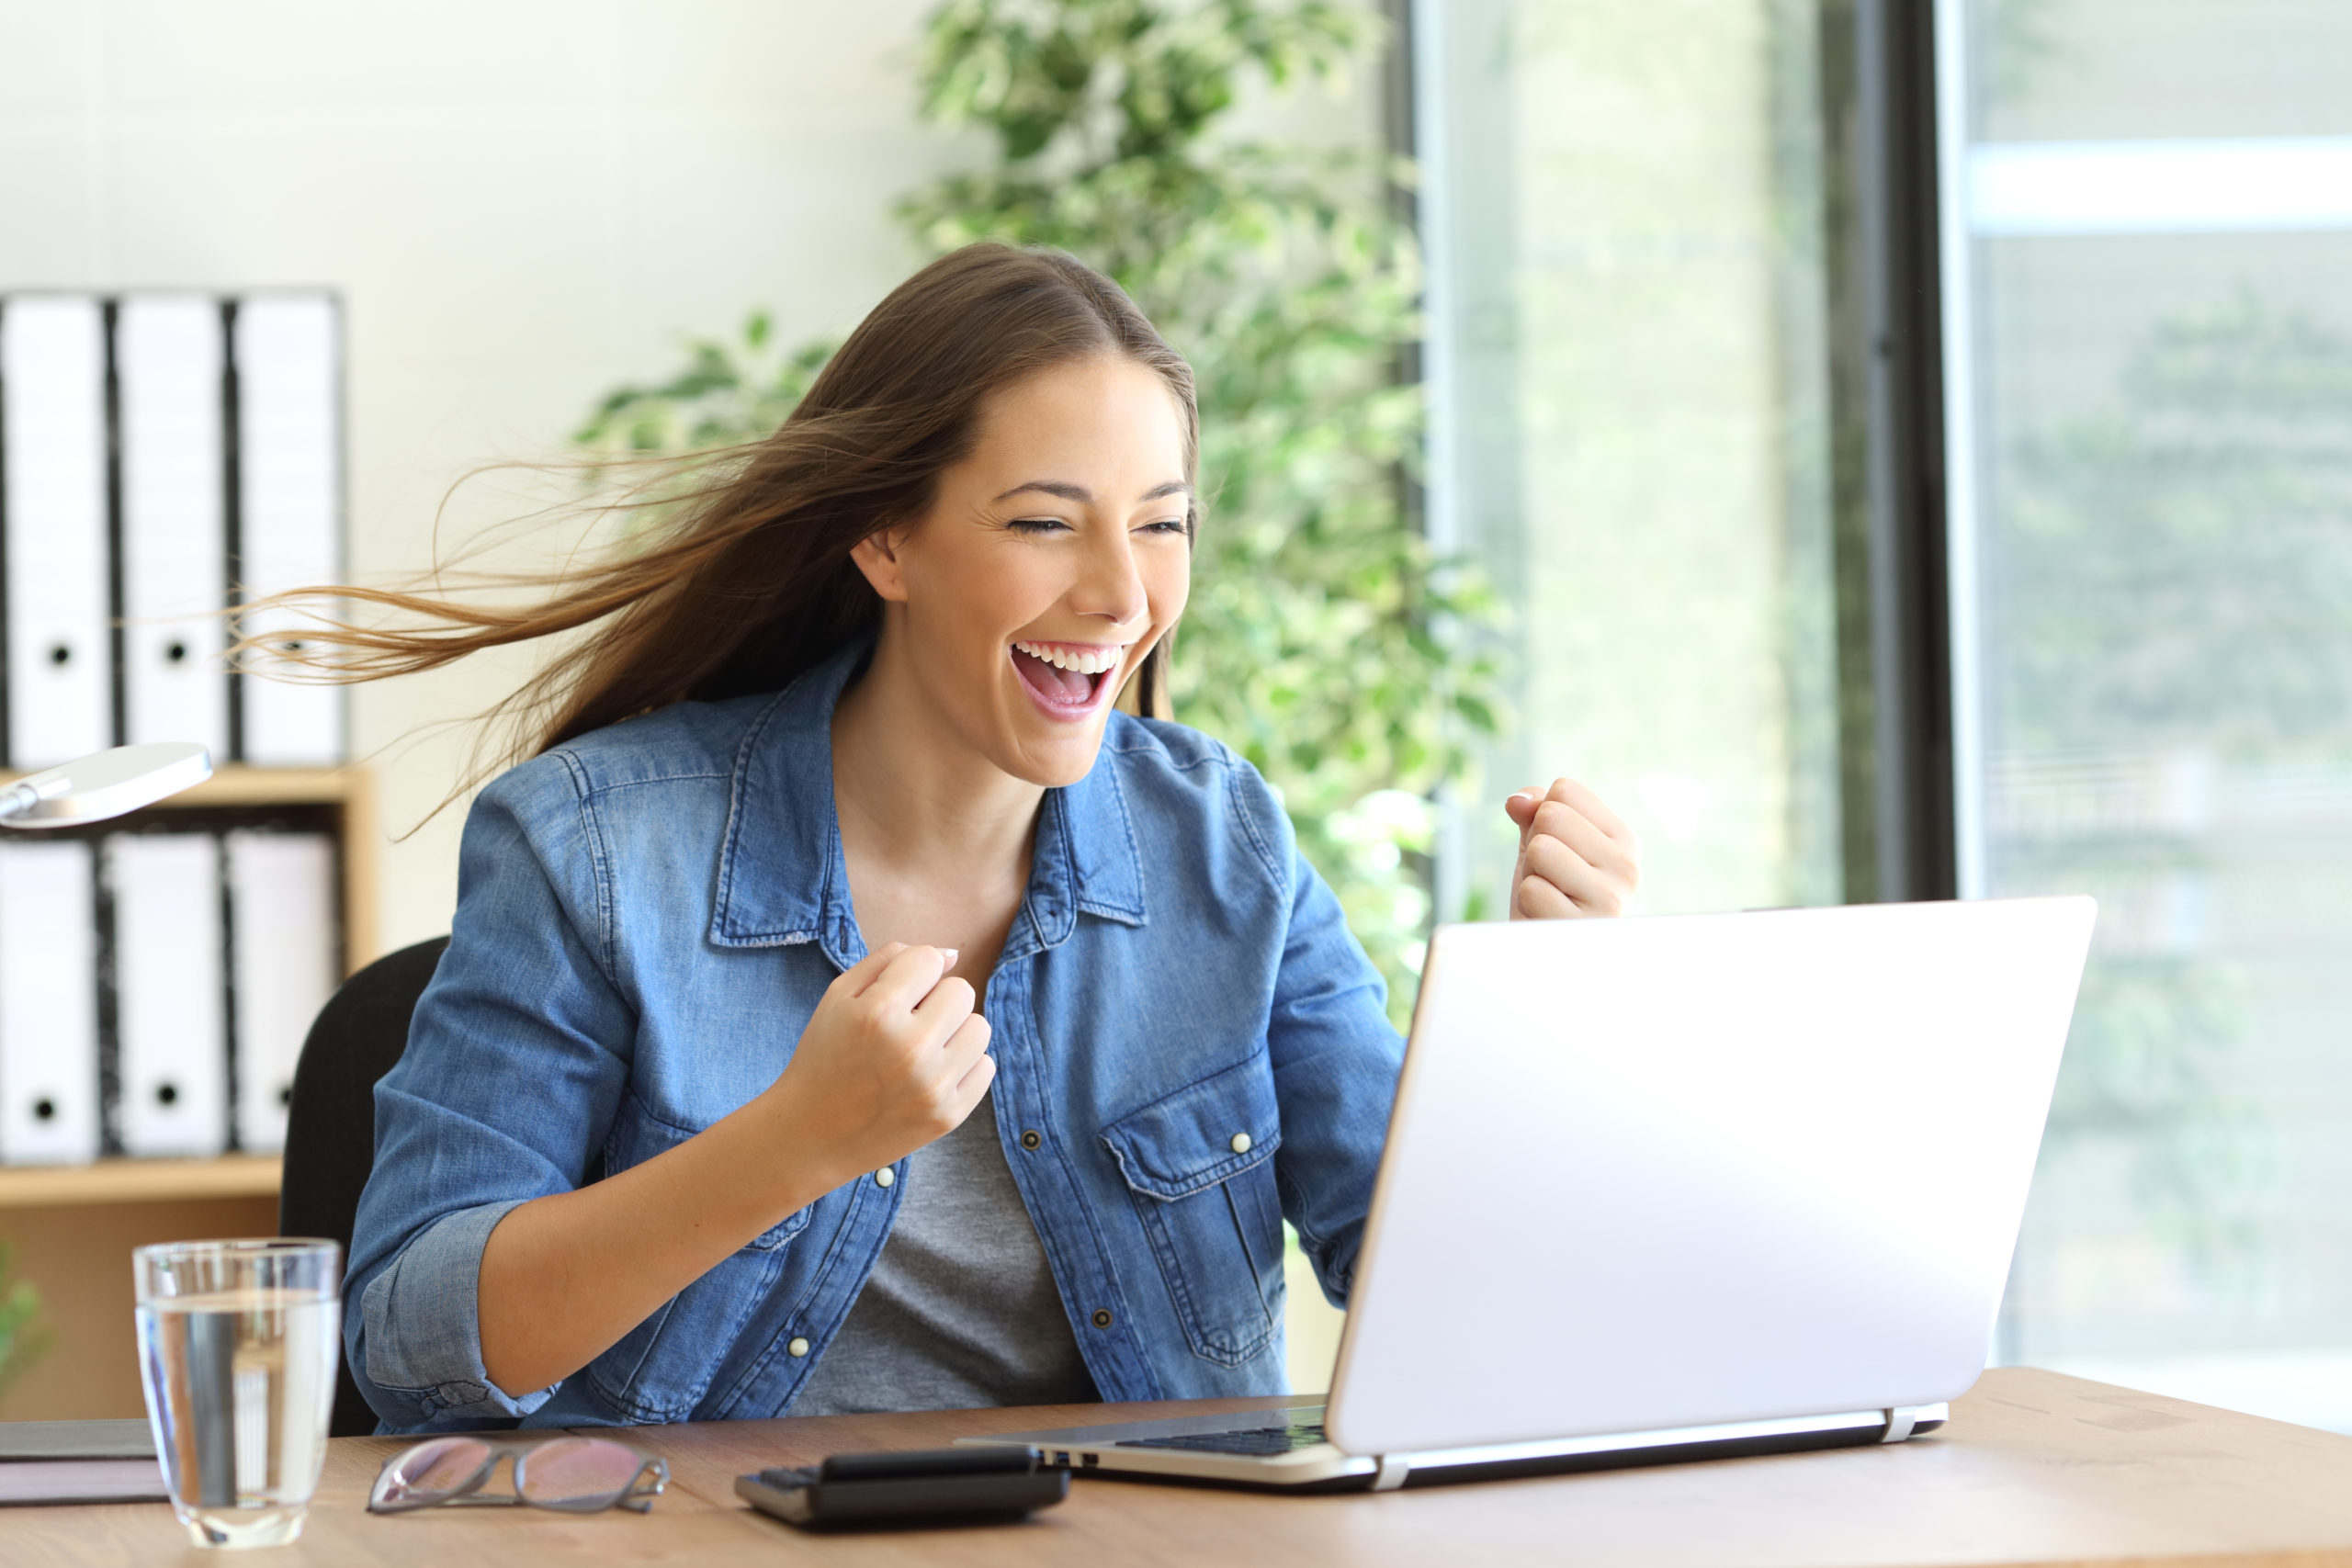 Aufgeregte Frau sitzt vor ihrem Laptop und freut sich über einen Erfolg